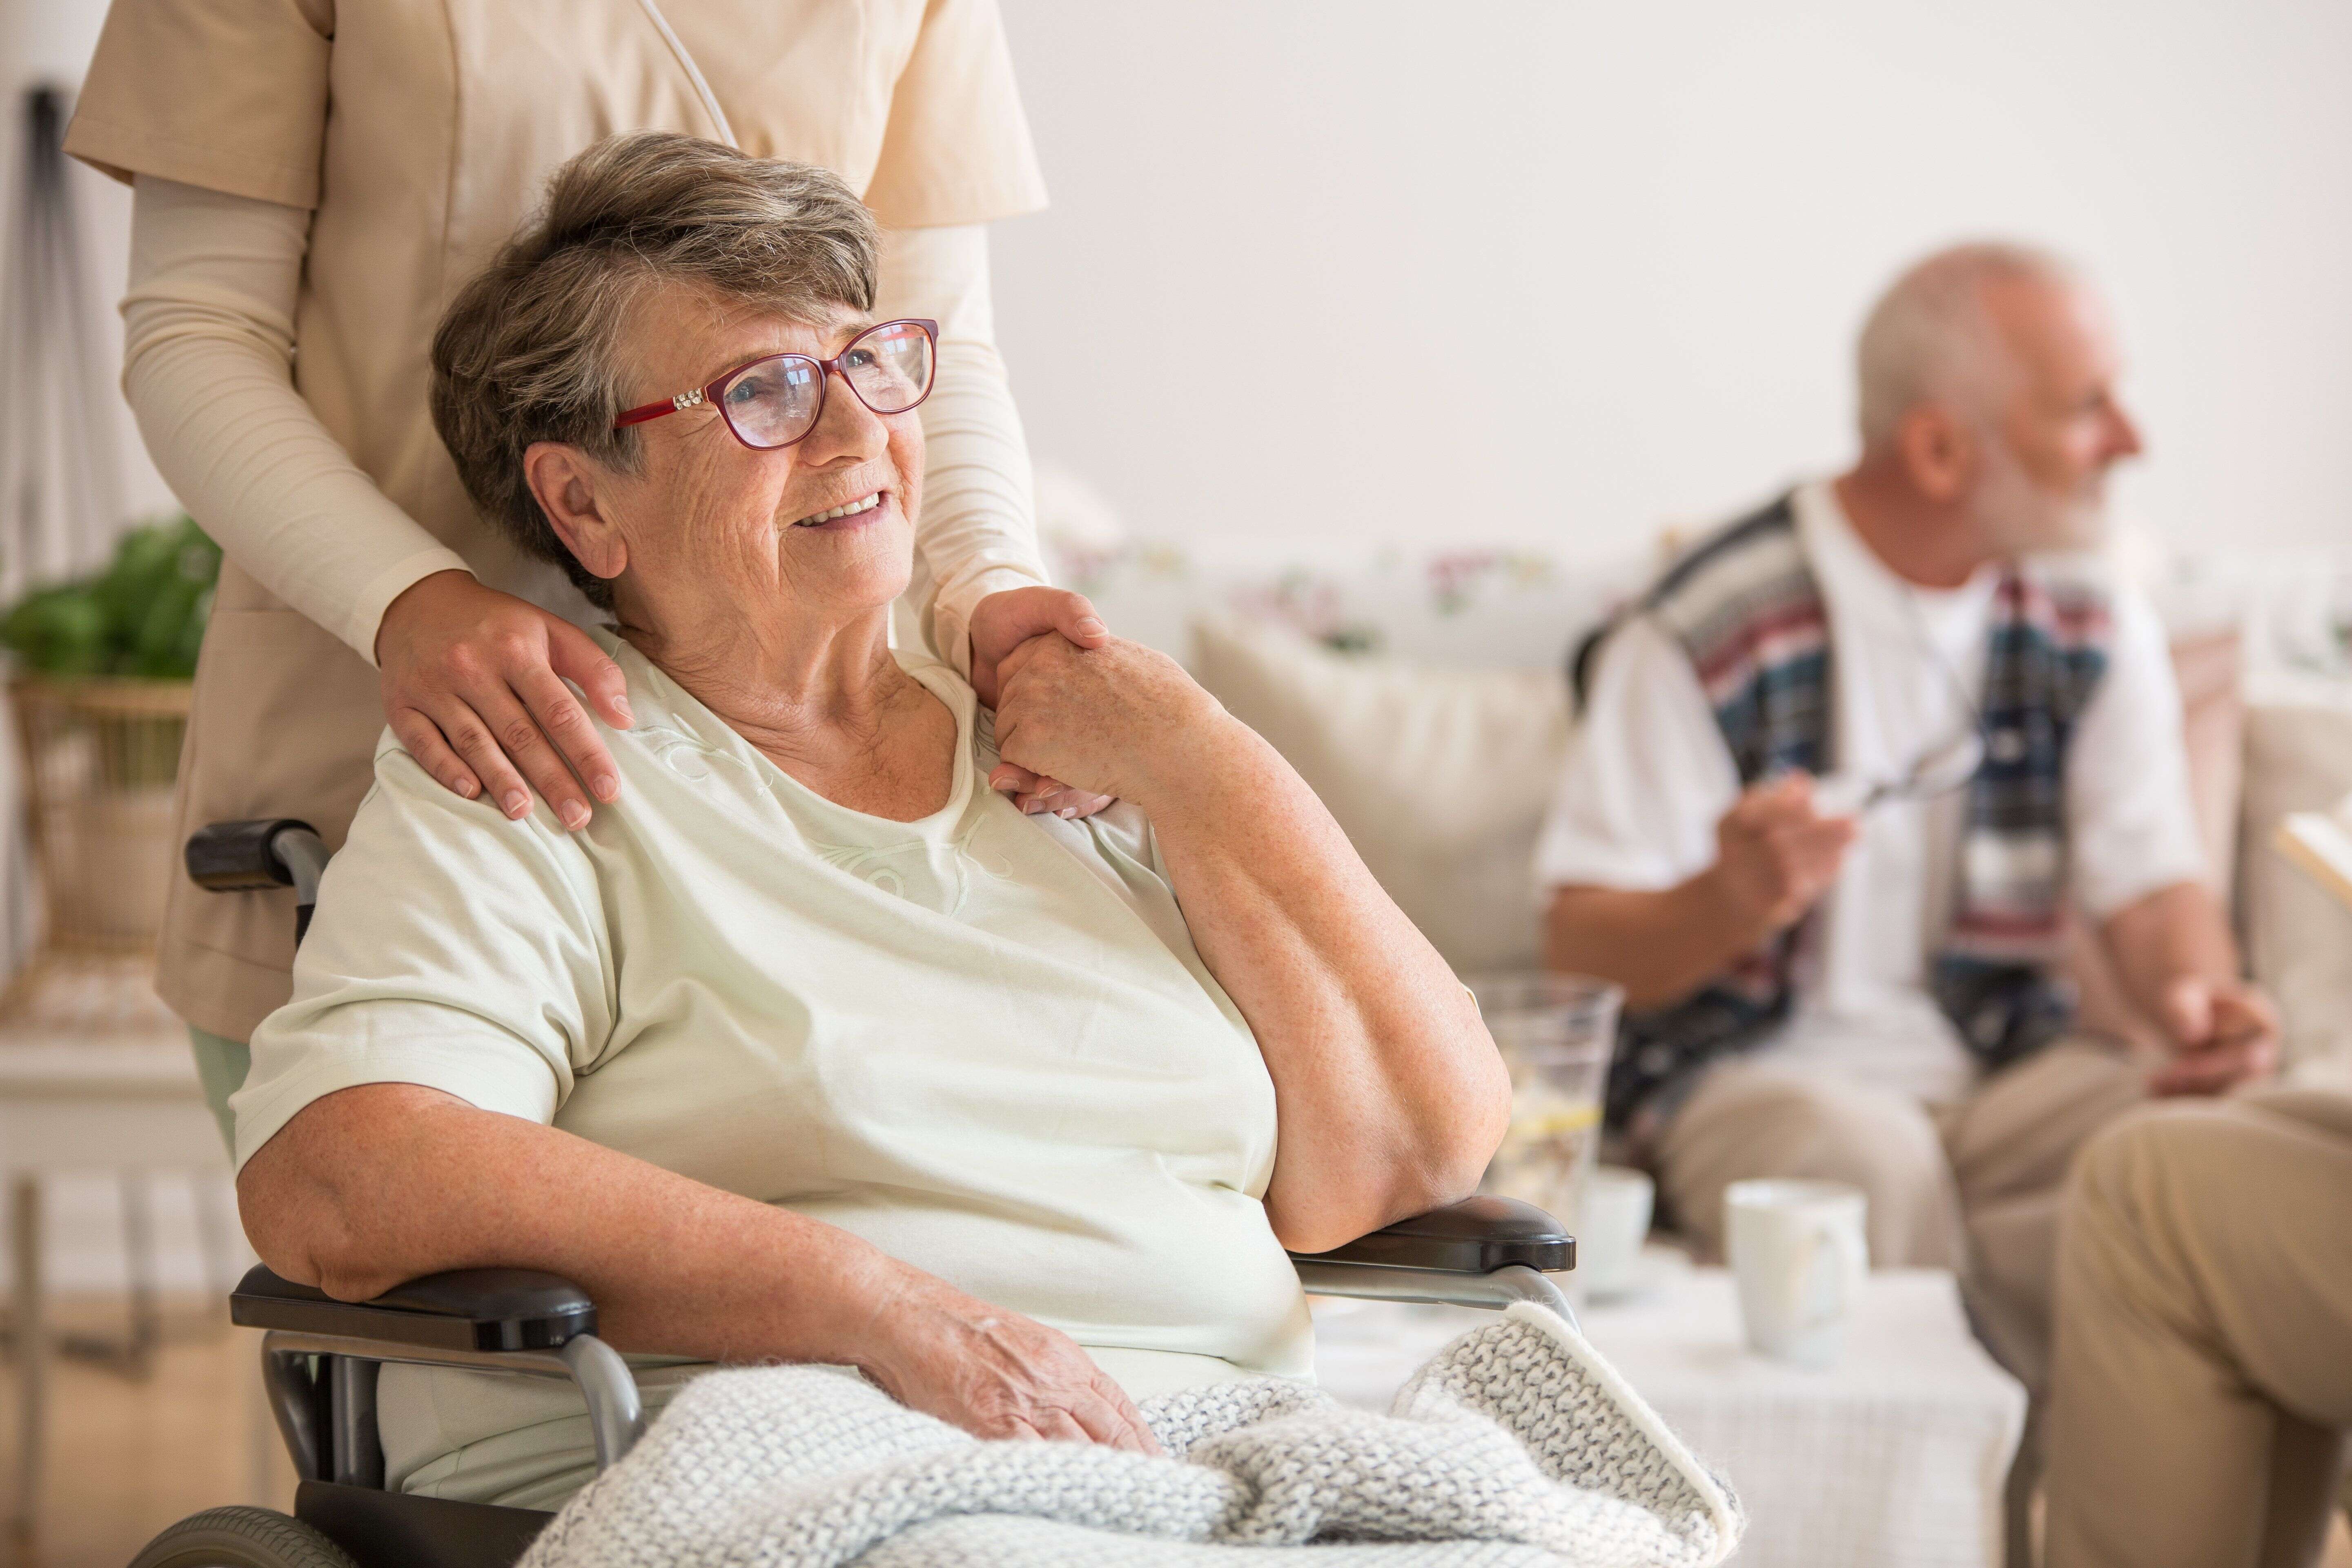 En règle général, les premiers symptômes de la maladie de Parkinson apparaissent vers l’âge de 60 ans.